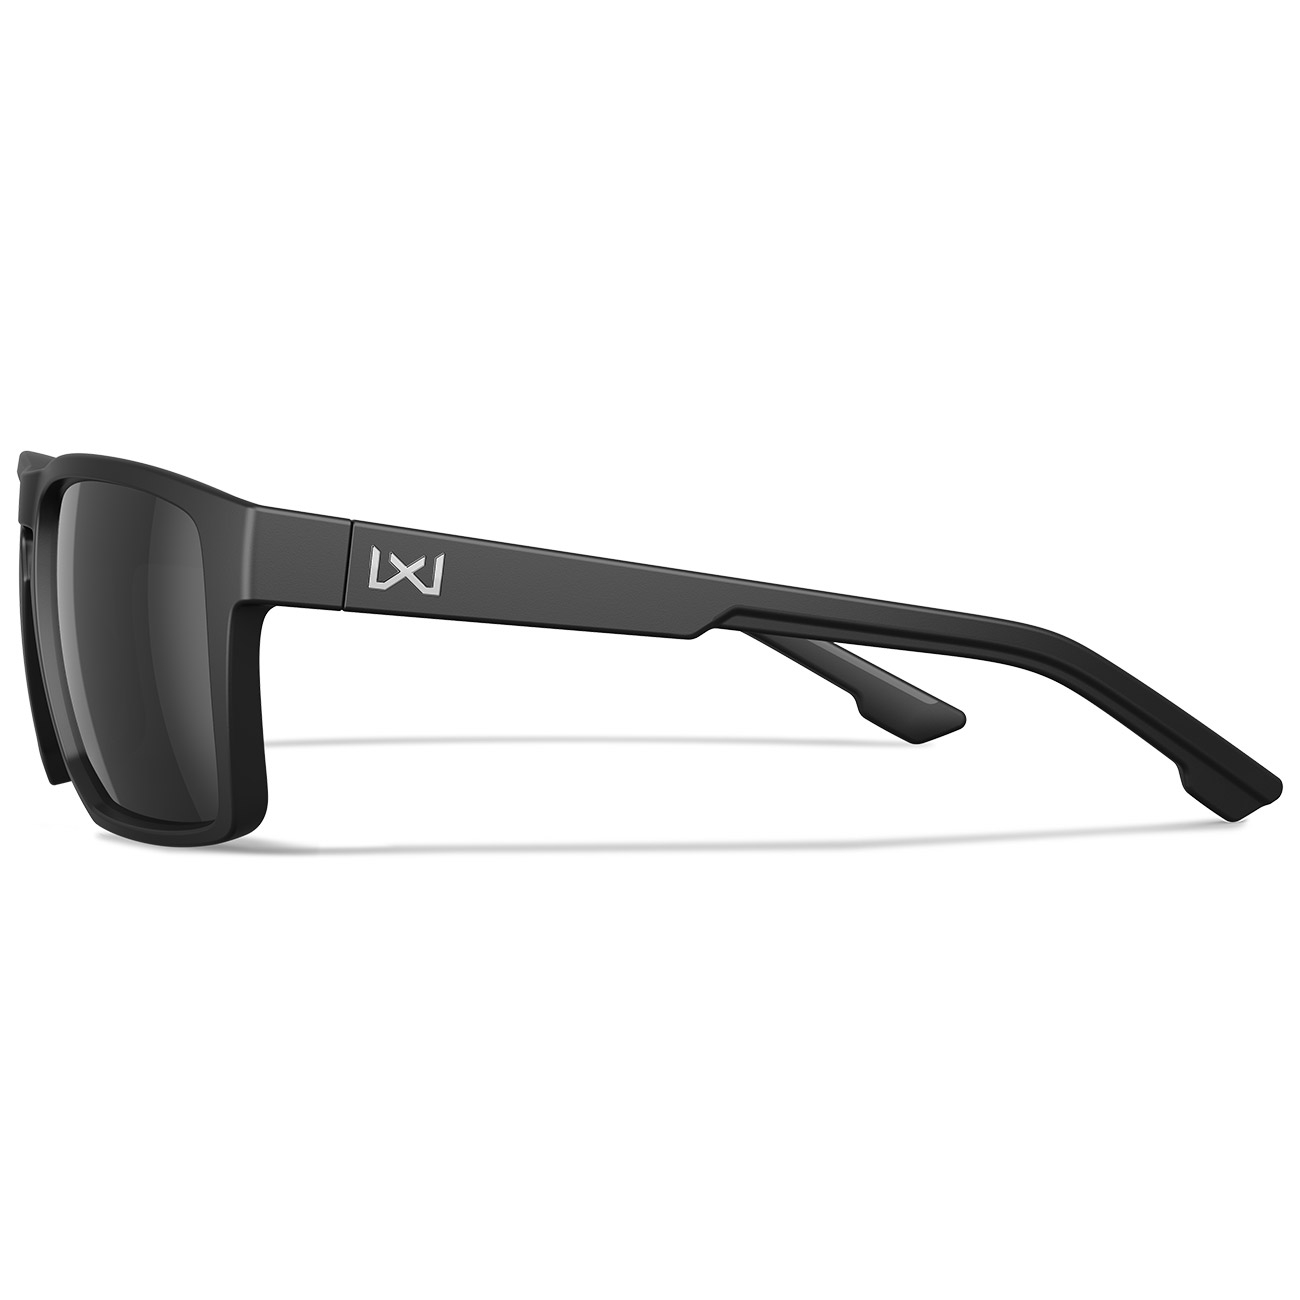 Wiley X Sonnebrille Founder Captivate matt schwarz Glser schwarz verspiegelt und polarisiert inkl. Seitenschutz Bild 2